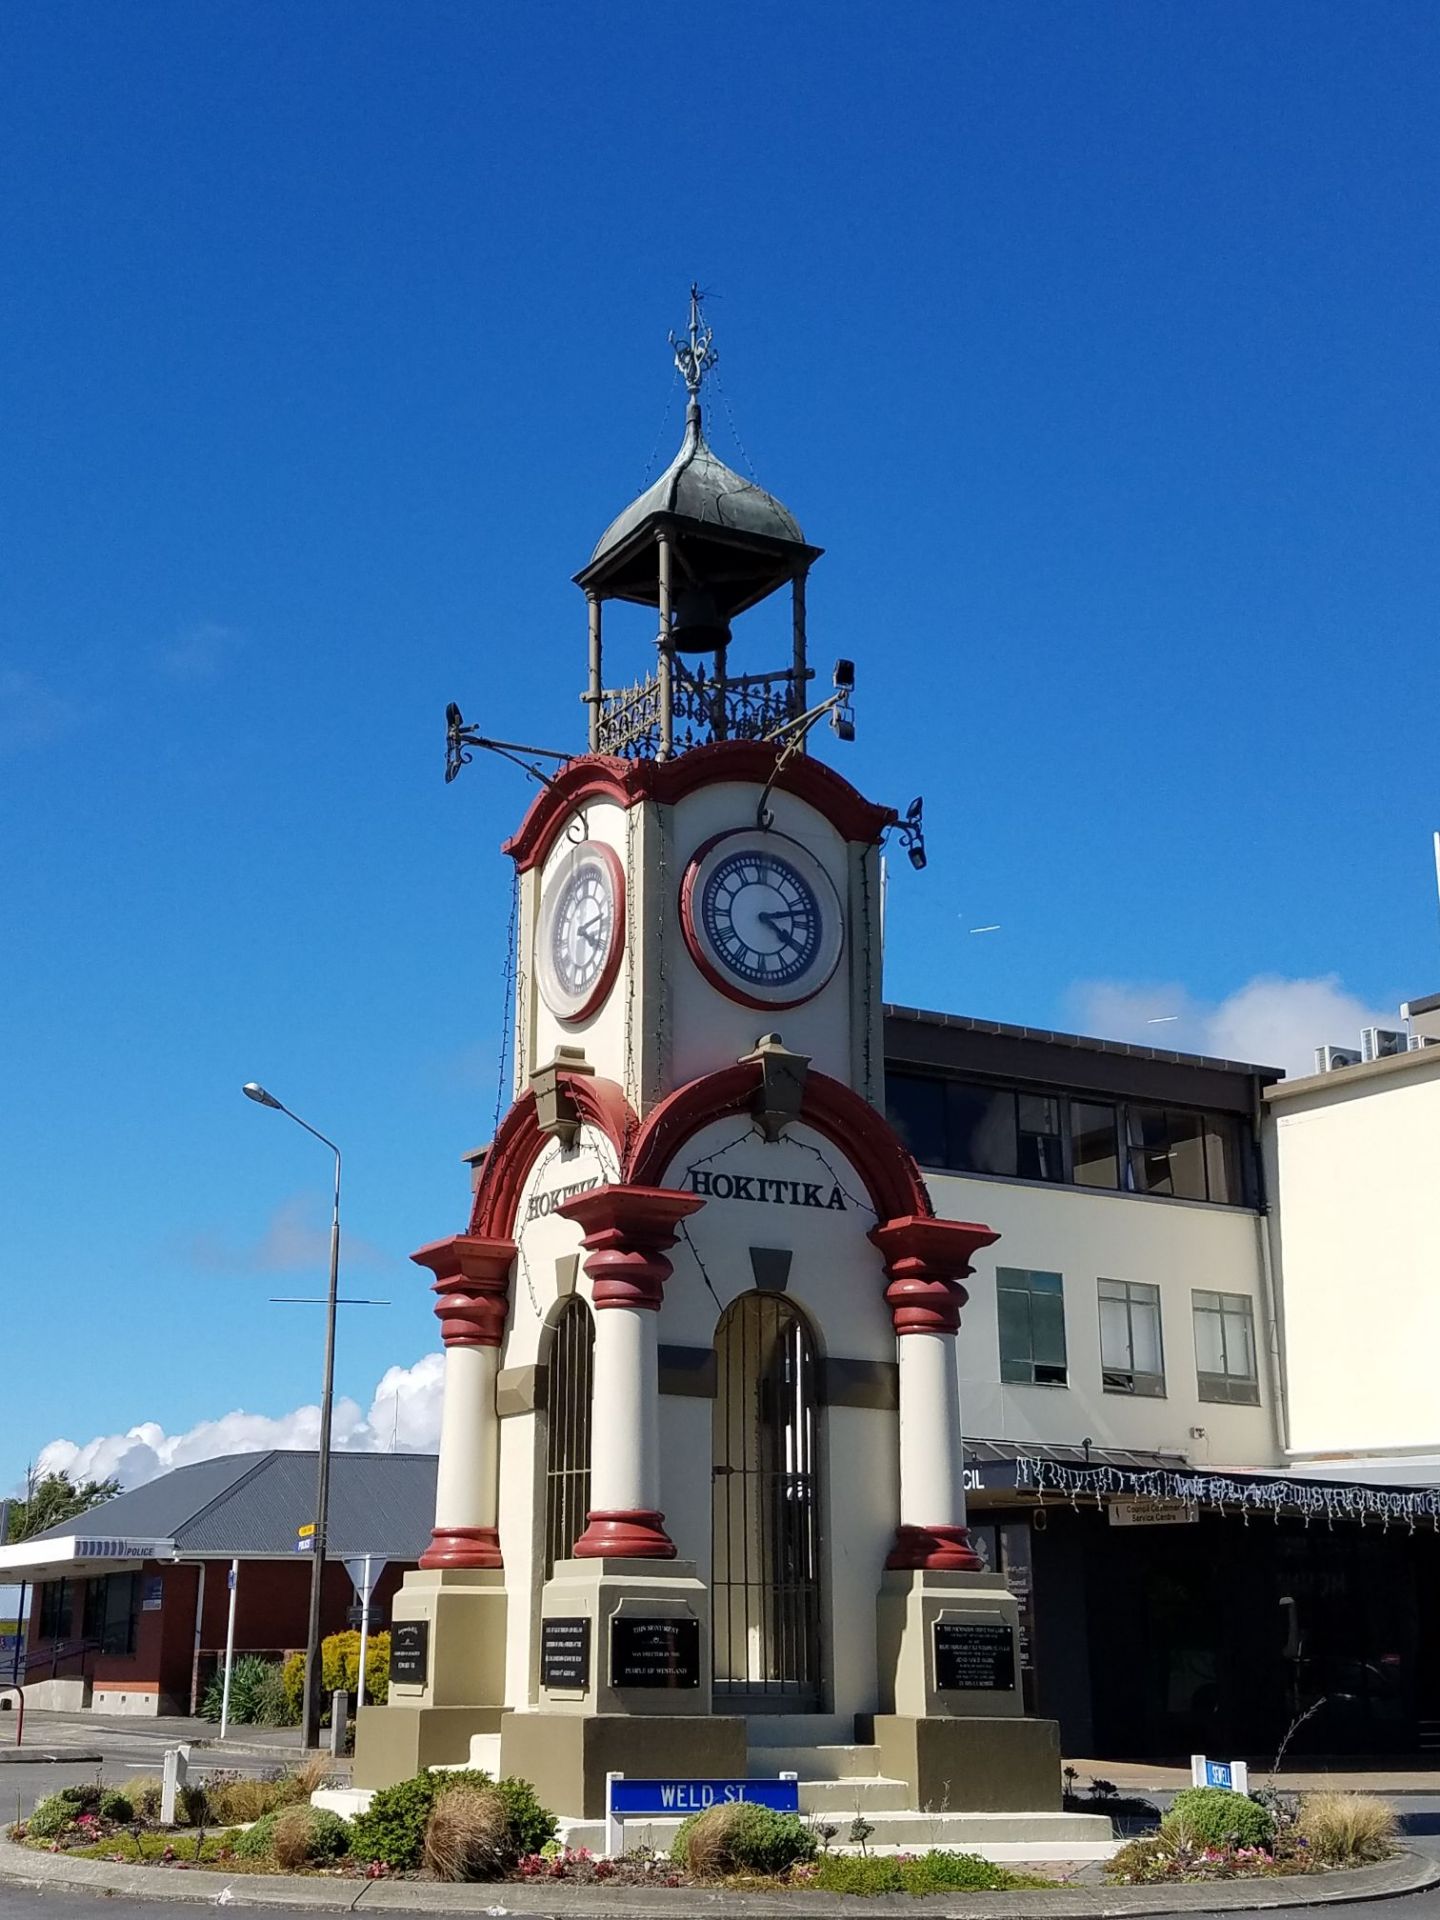 霍基蒂卡是新西兰西海岸的一座小镇，是前往福克斯冰川和费朗兹约瑟夫冰川的必经之处。因出产新西兰特有的绿